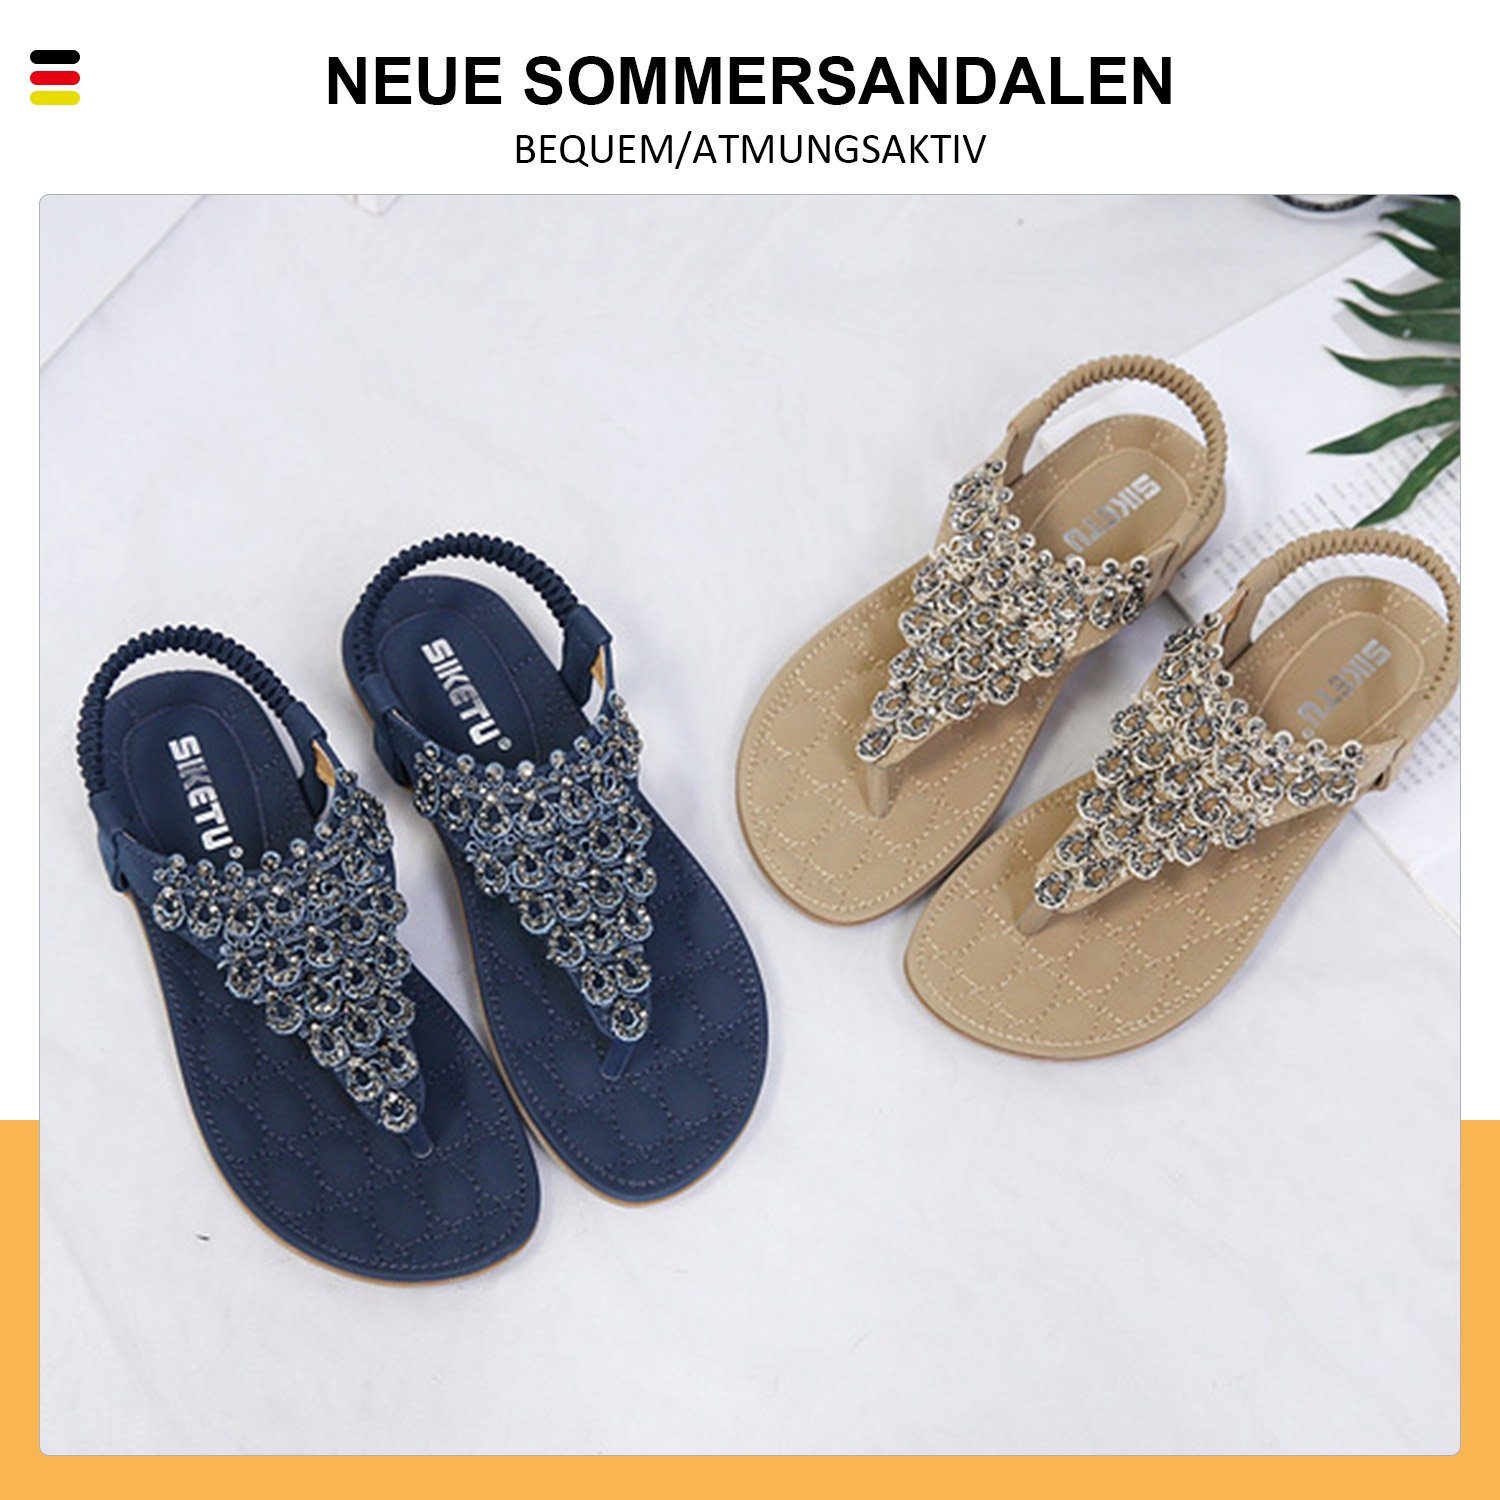 Blau Spitze Strass Strand Zehentrenner böhmischen Freizeit MAGICSHE Schuhe Sommer Sandale